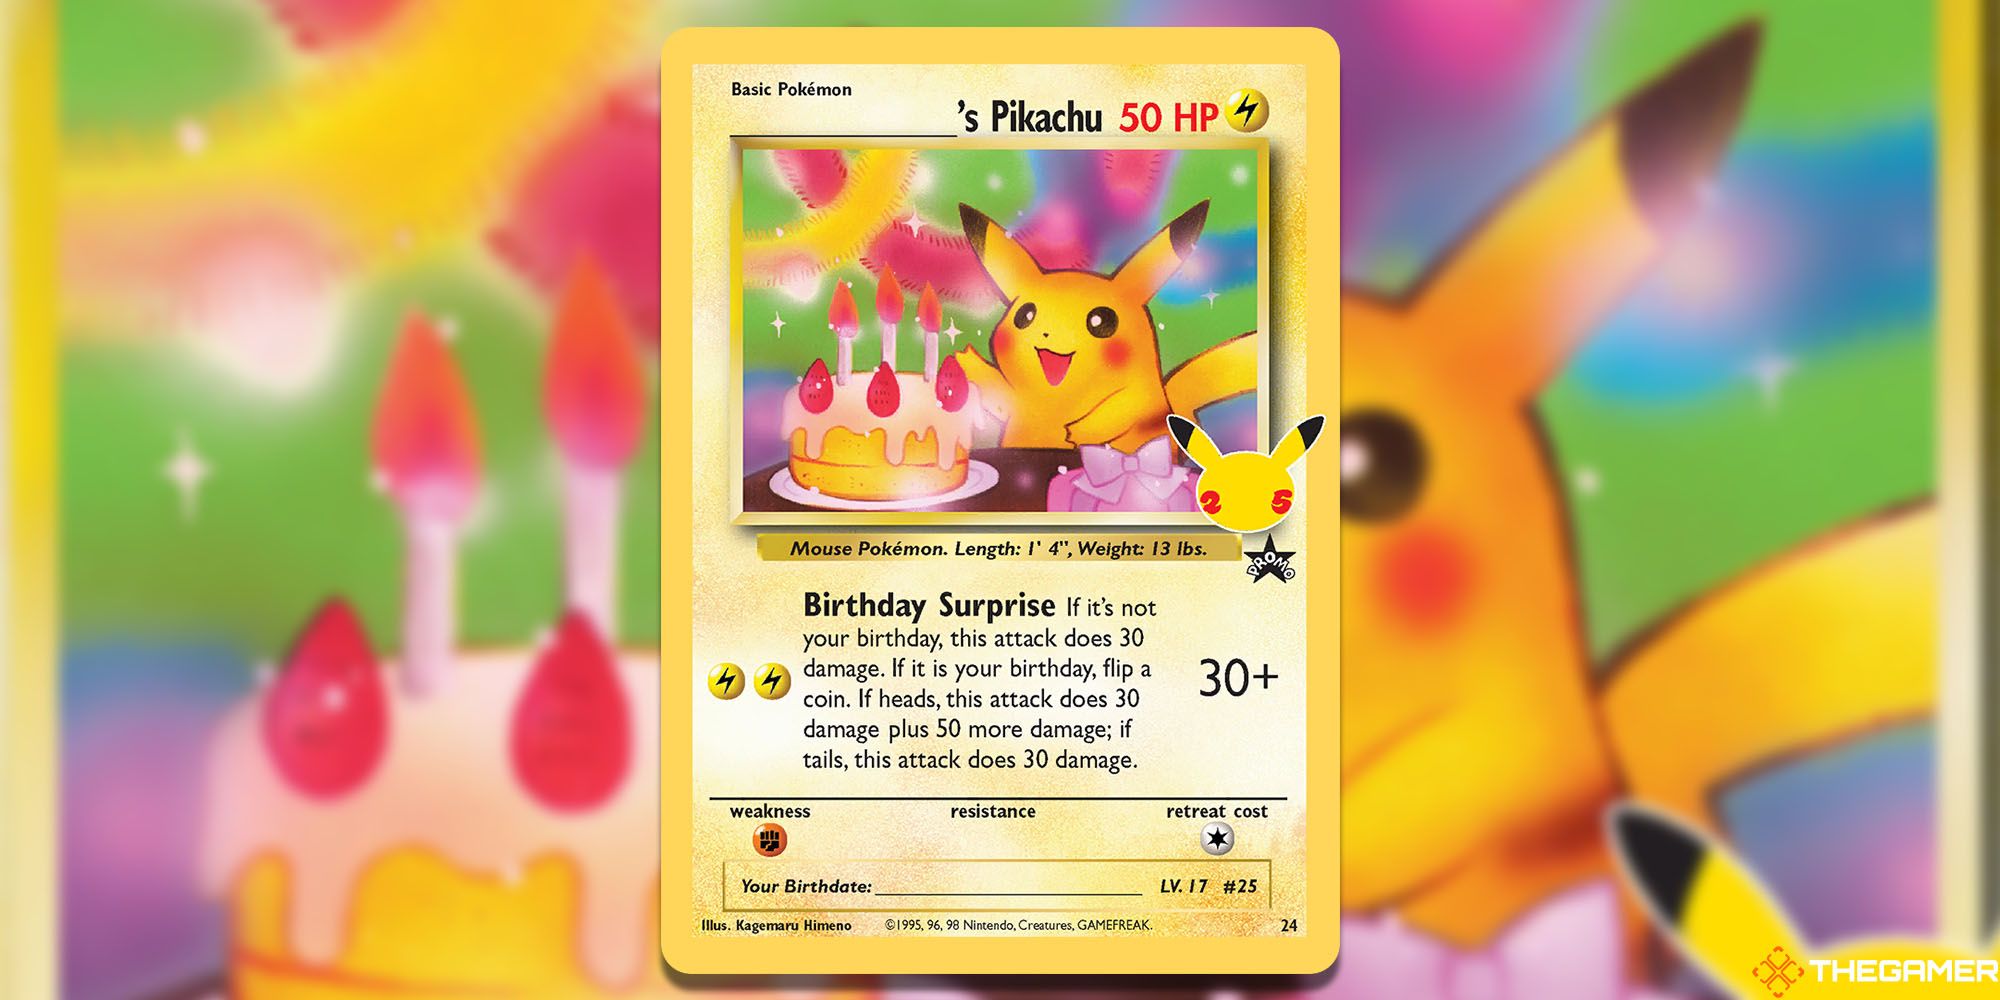 ____'s Pikachu (Celebrations #24)